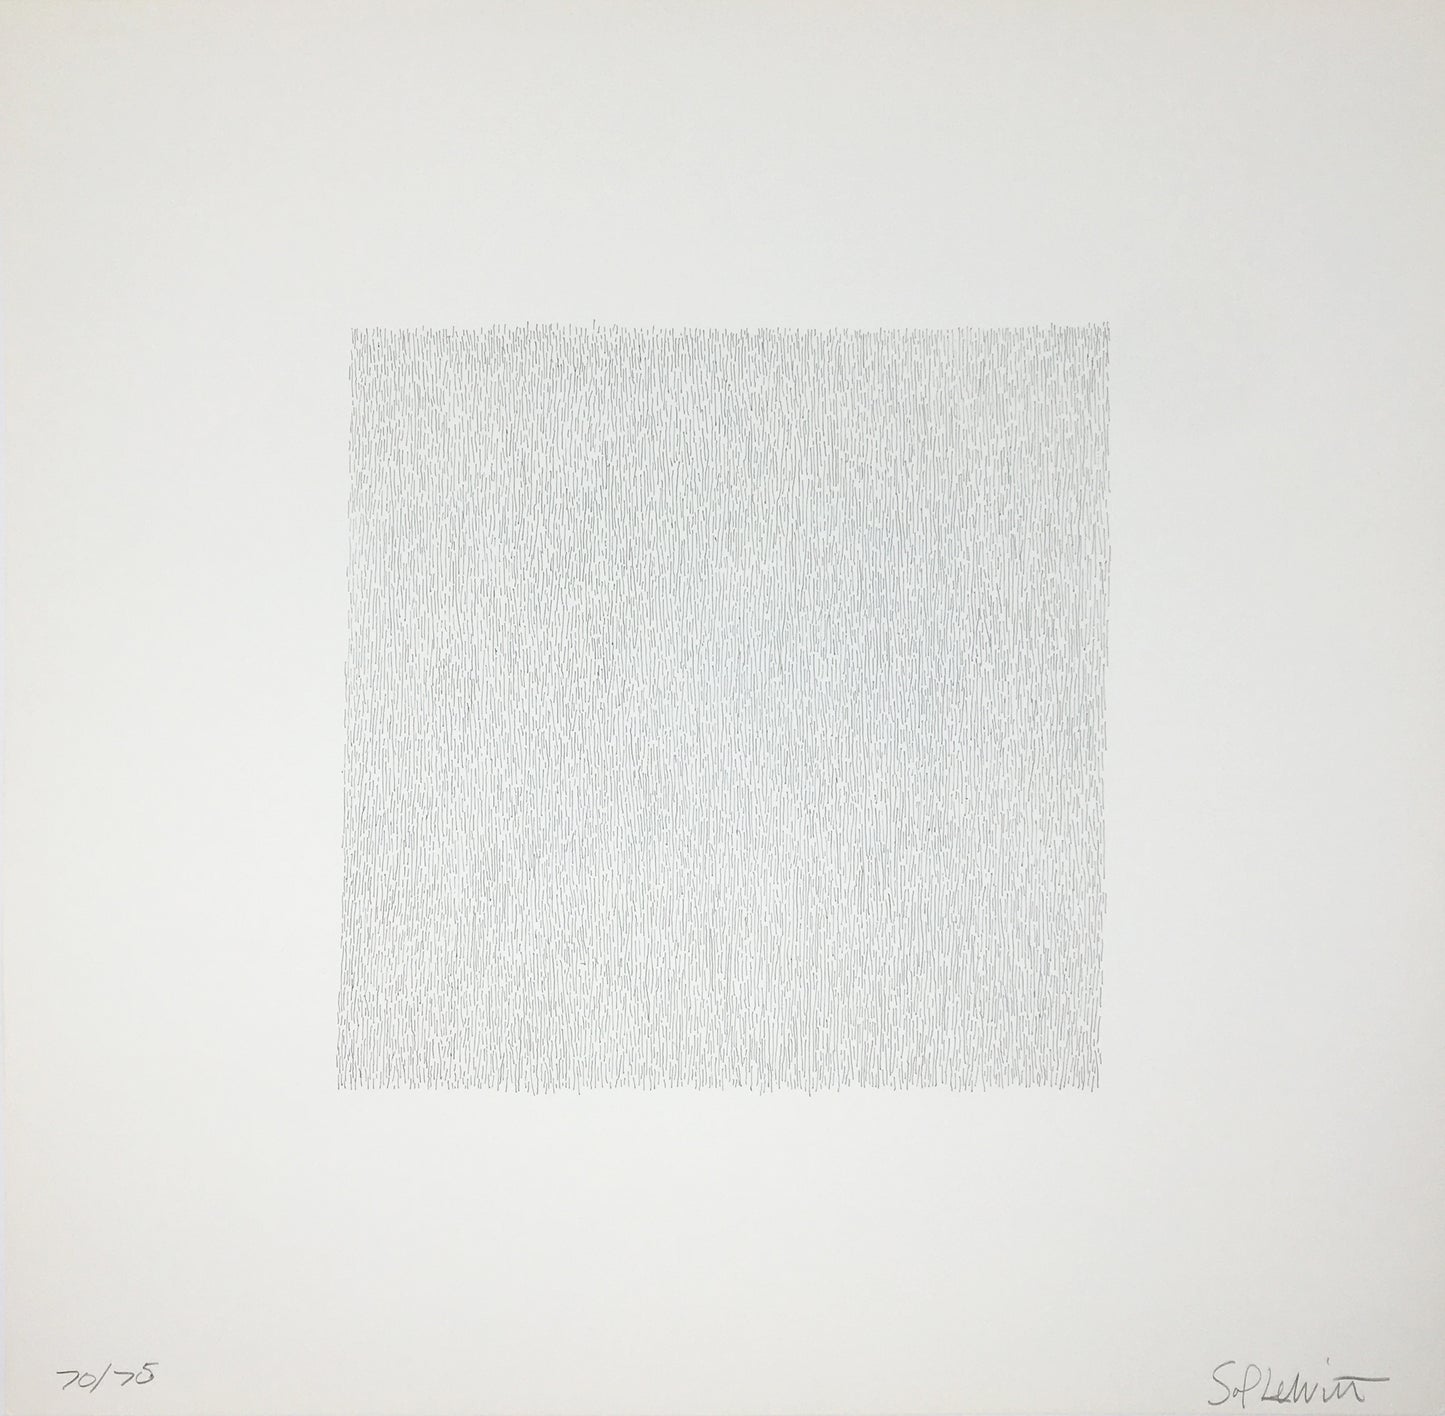 Sol Lewitt - Vertical lines, not touching, 1971